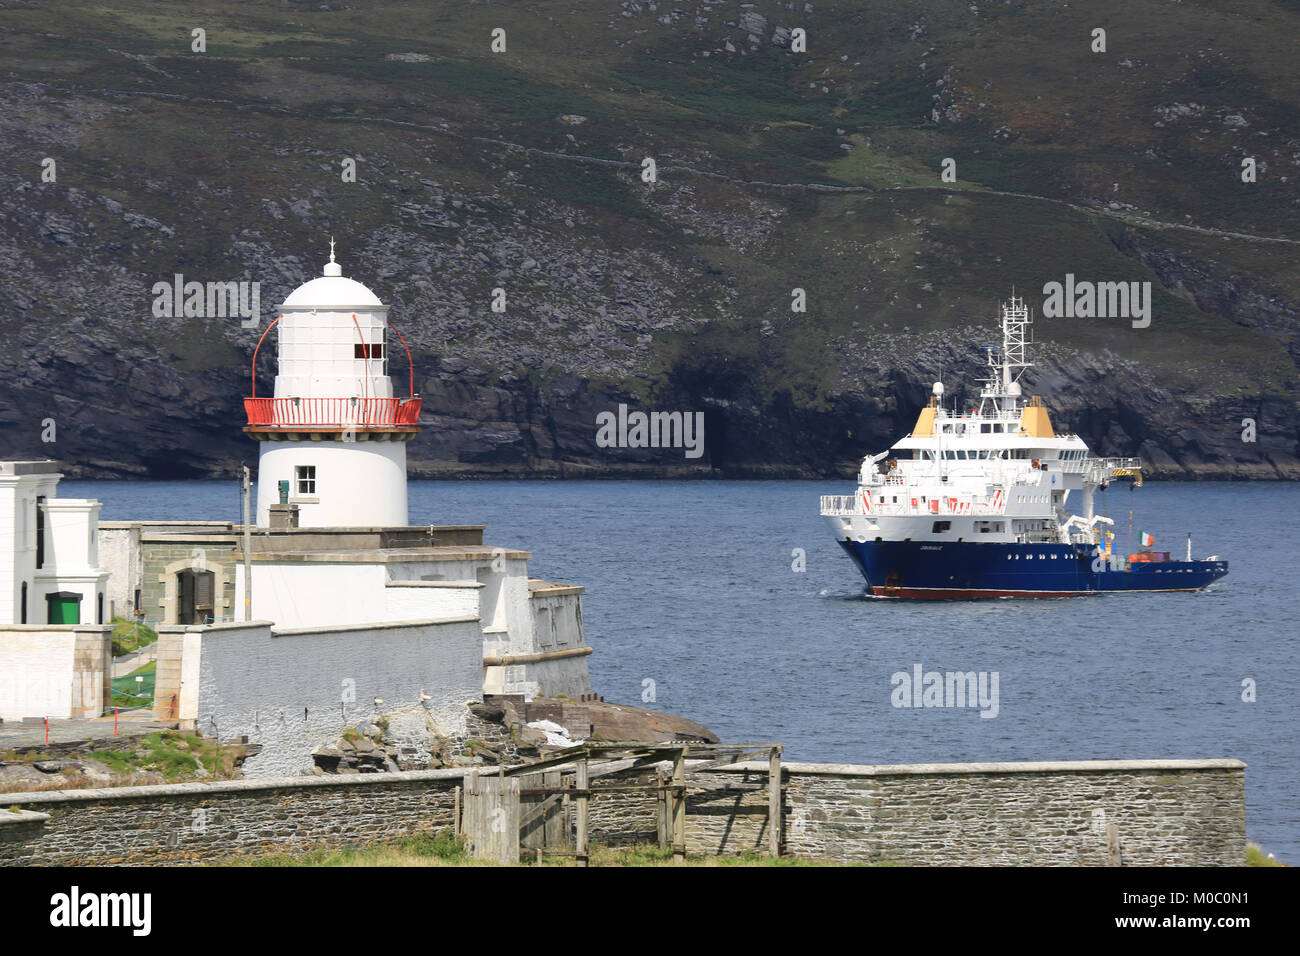 Feux de navire en service irlandais cromwells point, Valence, l'île de façon sauvage de l'Atlantique, dans le comté de Kerry, Irlande Banque D'Images